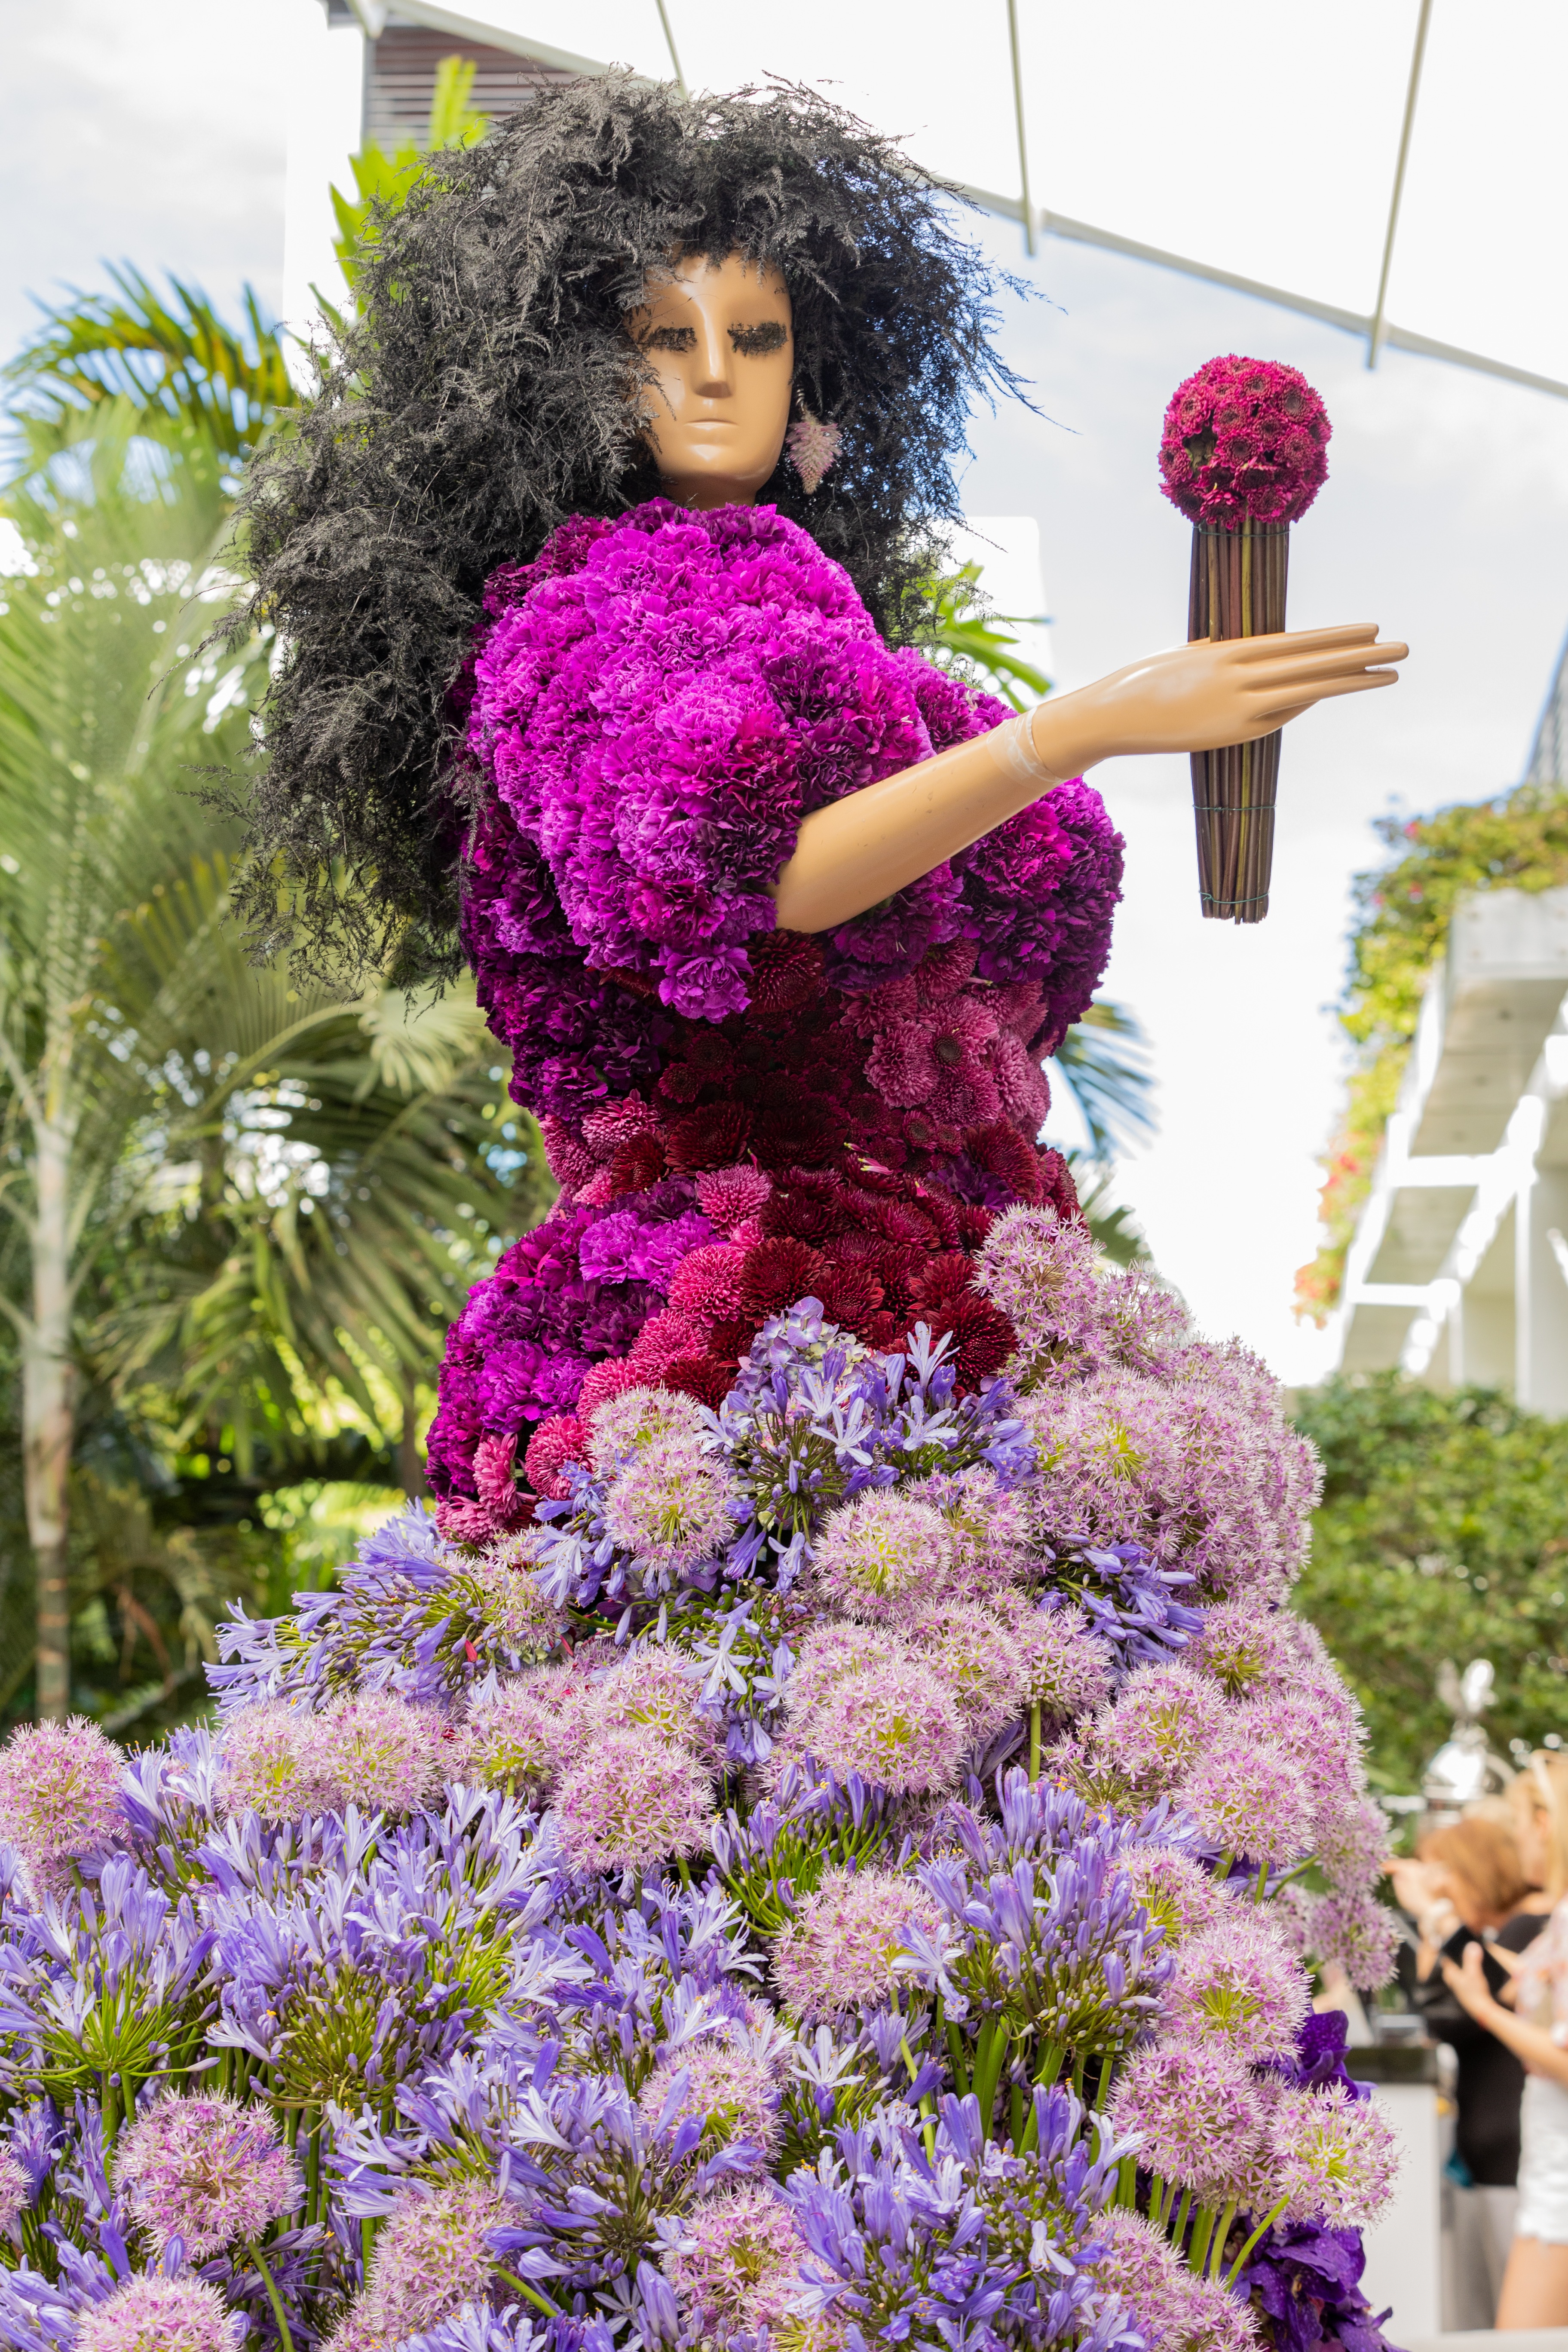 Floral mannequin inspired by Oprah Winfrey